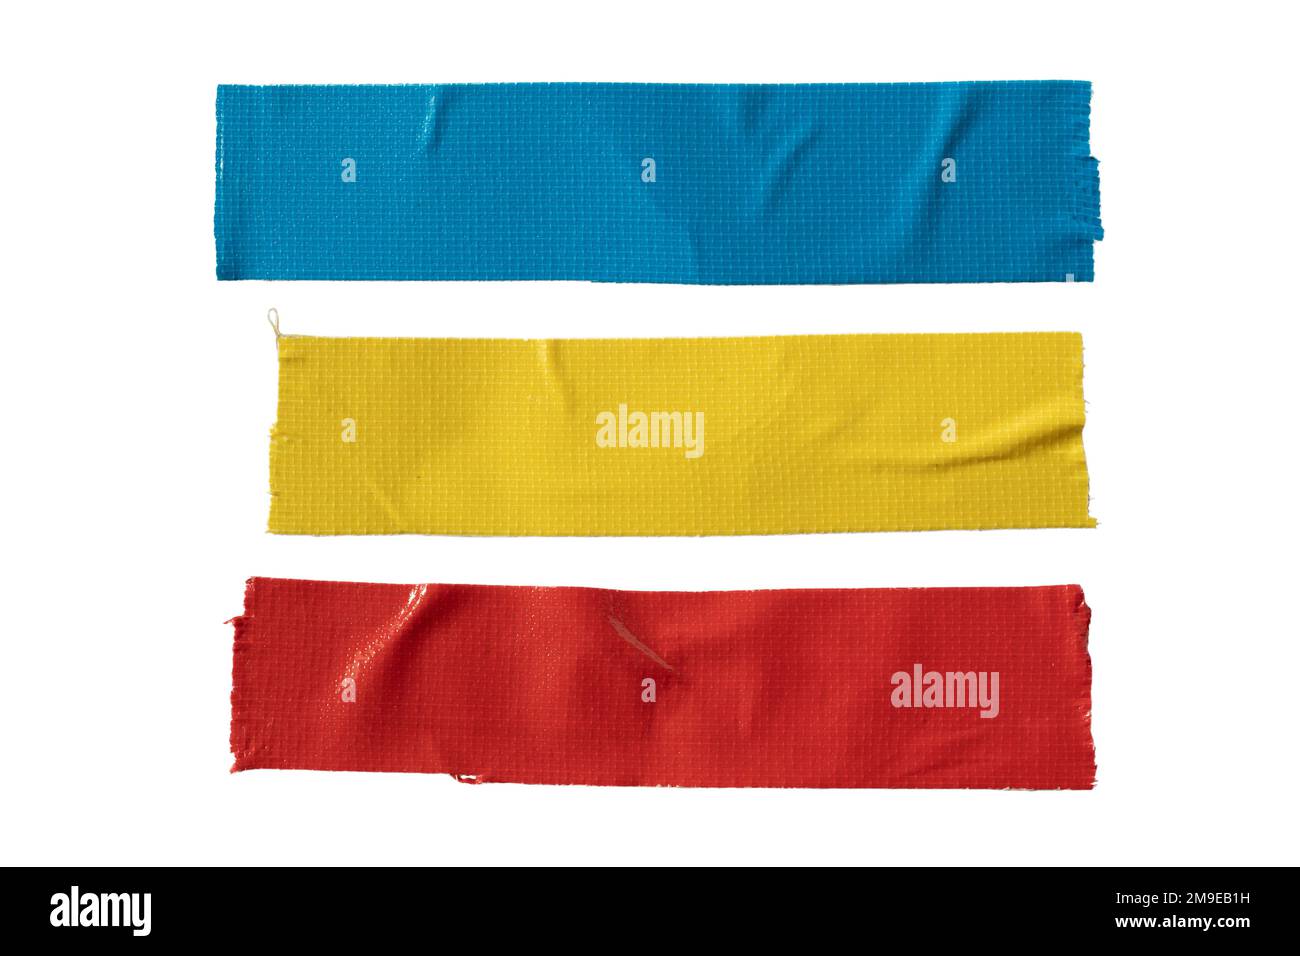 Nastro in tessuto blu, giallo e rosso su sfondo bianco con percorso di ritaglio Foto Stock